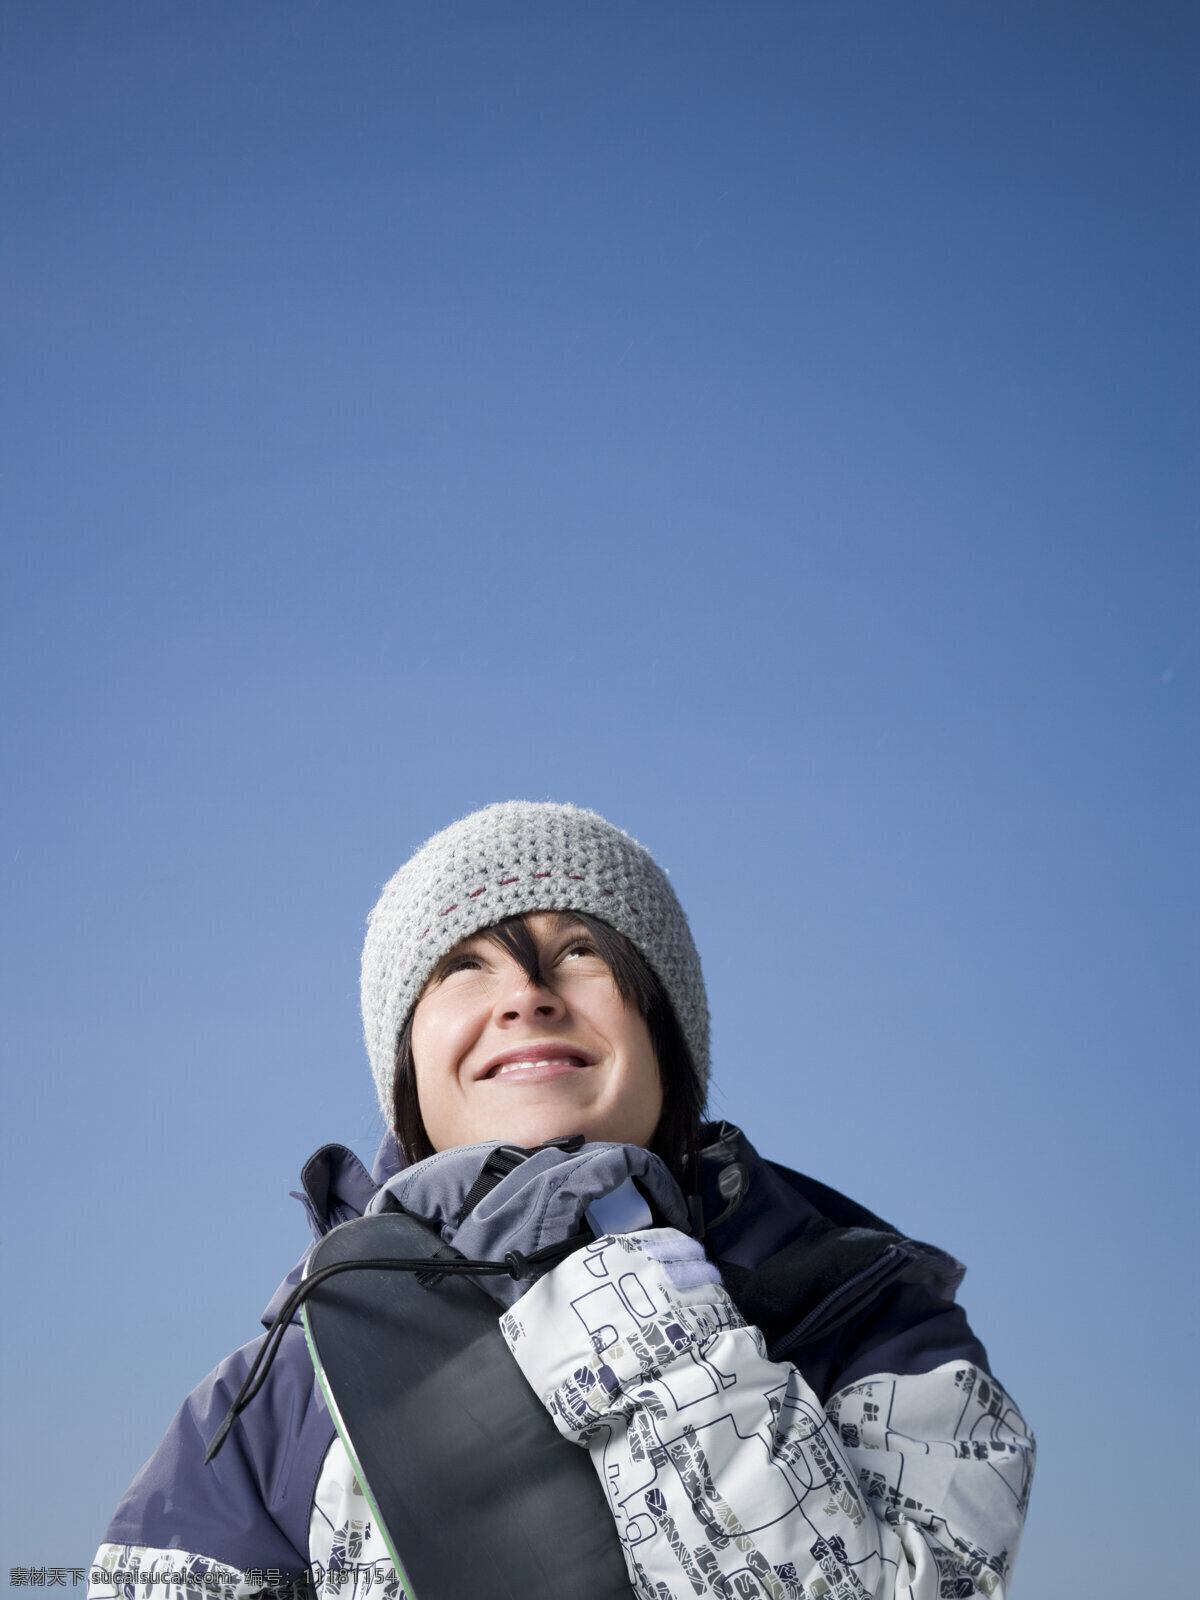 抱 滑雪板 微笑 女性 滑雪 滑雪场 运动 滑雪服 滑雪工具 滑雪图片 生活百科